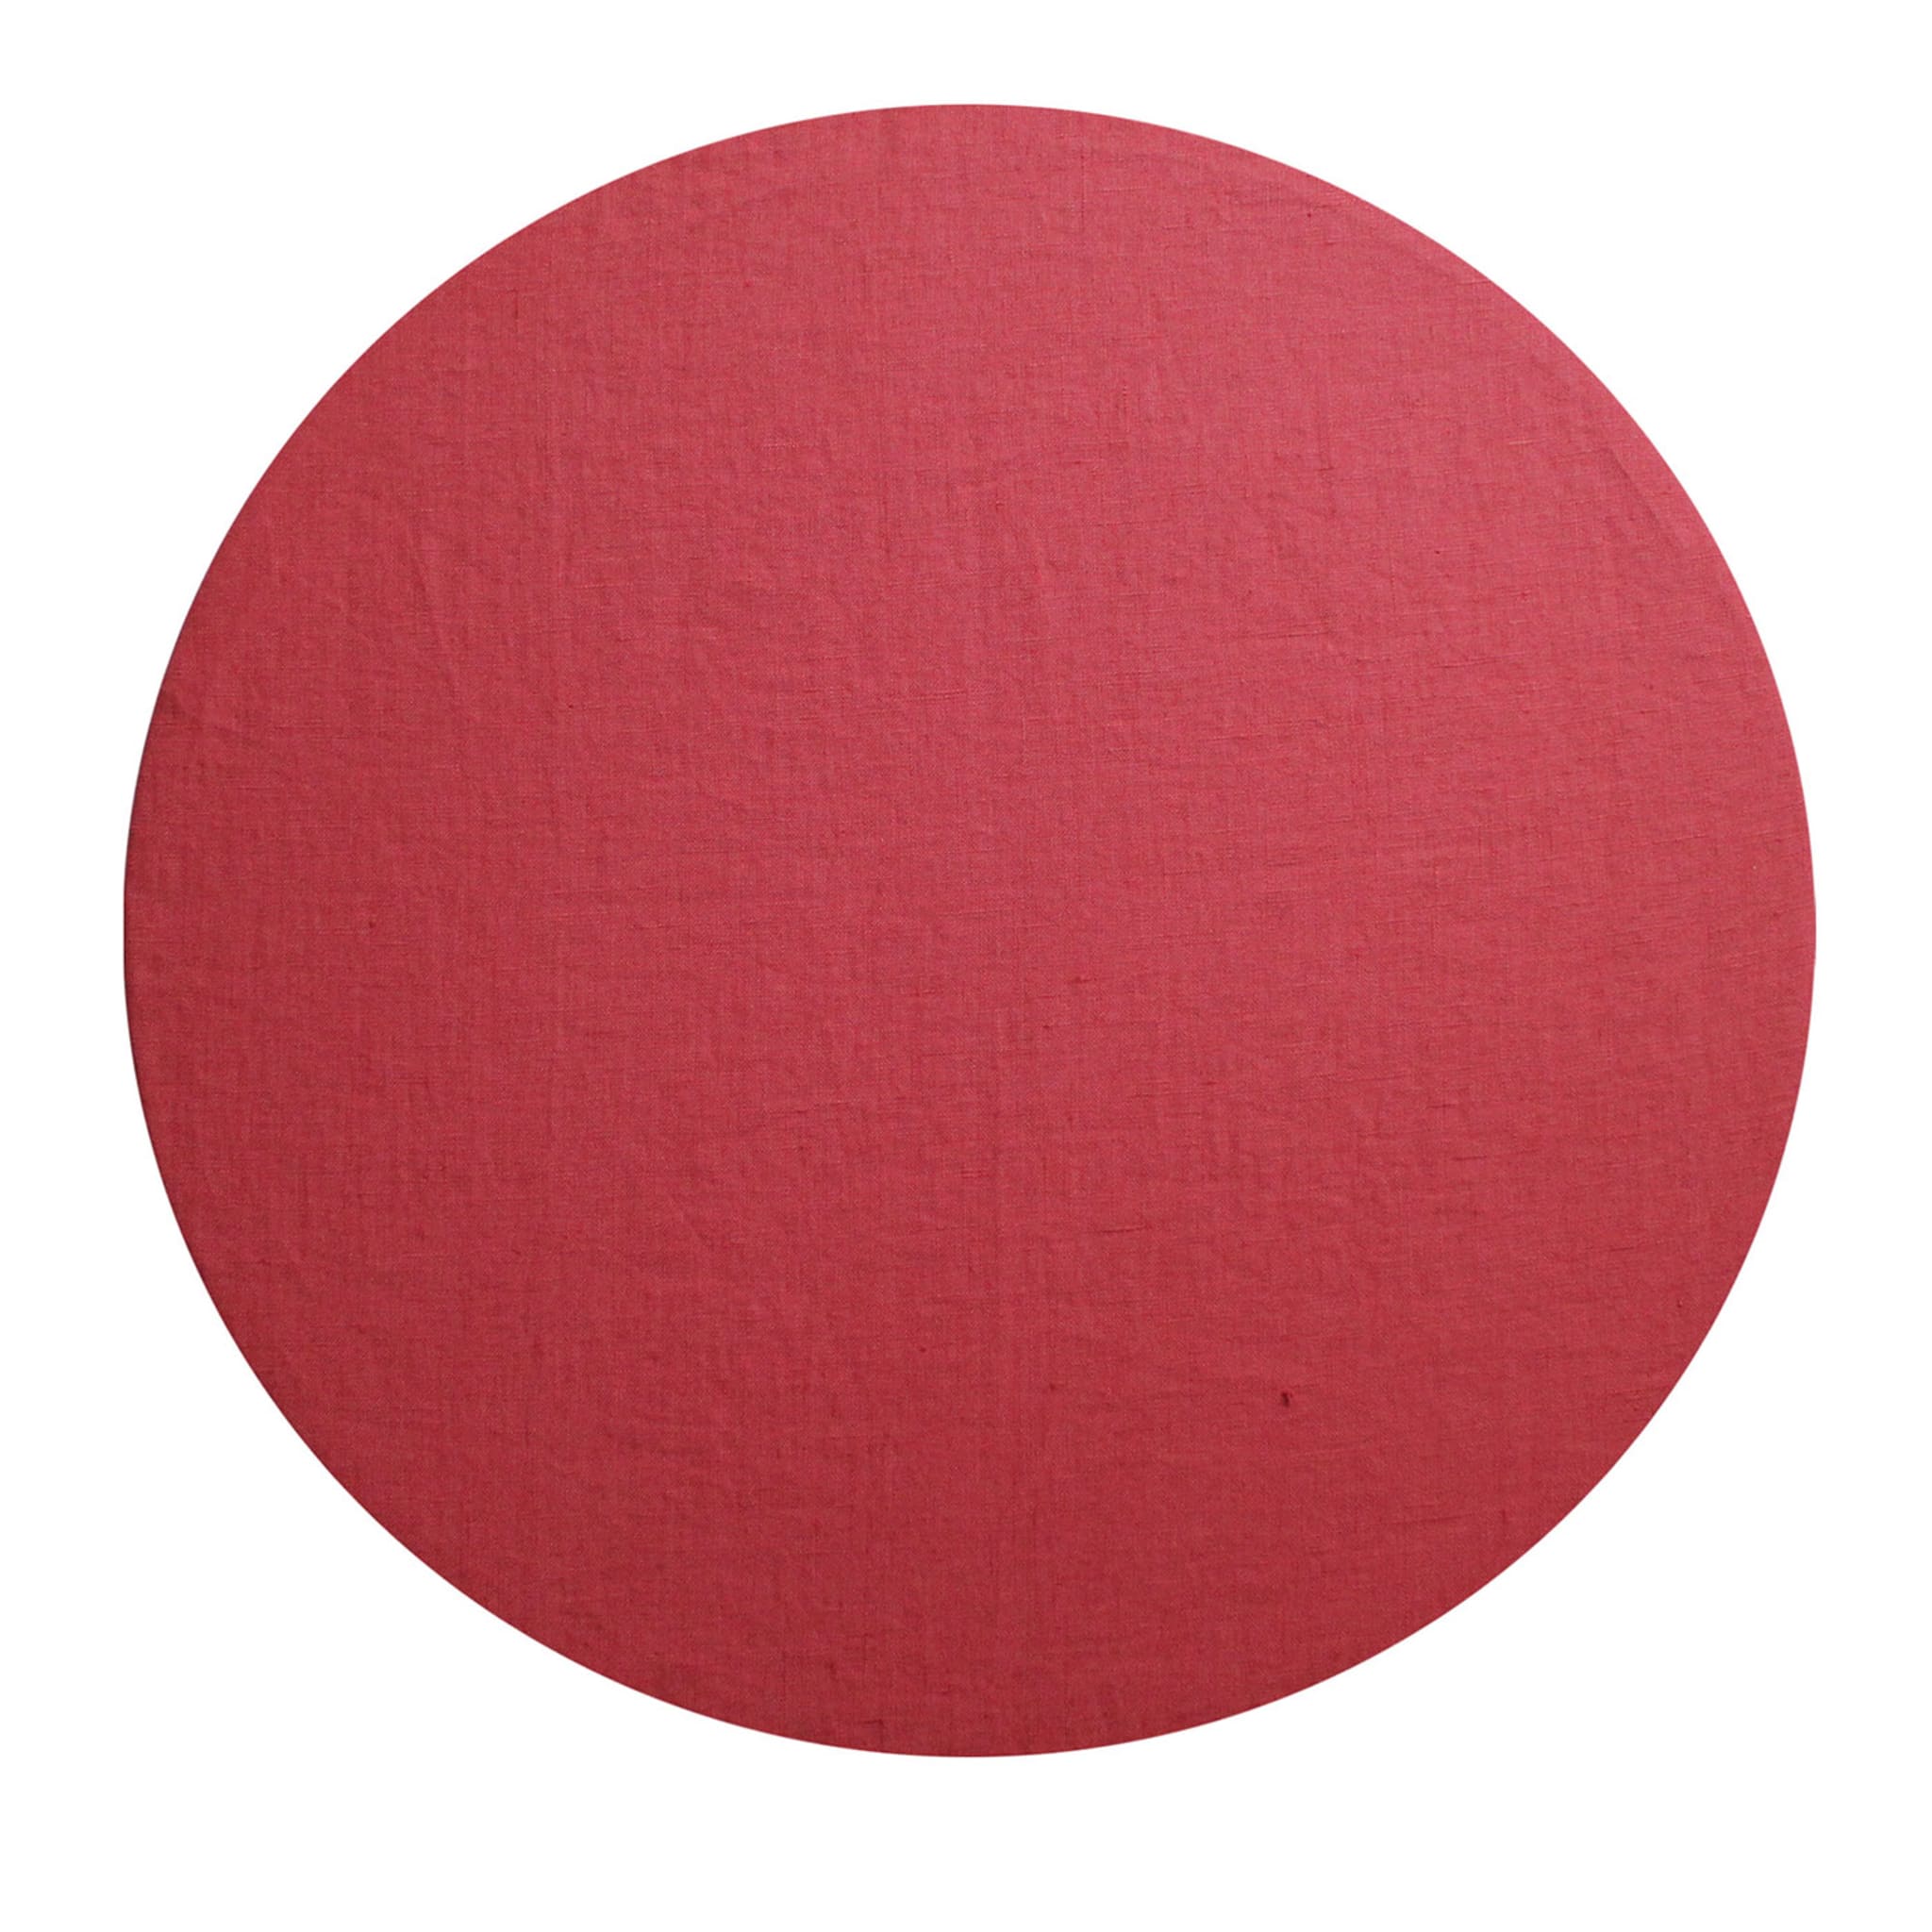 Mantelito redondo rojo Cuffiette - Vista principal